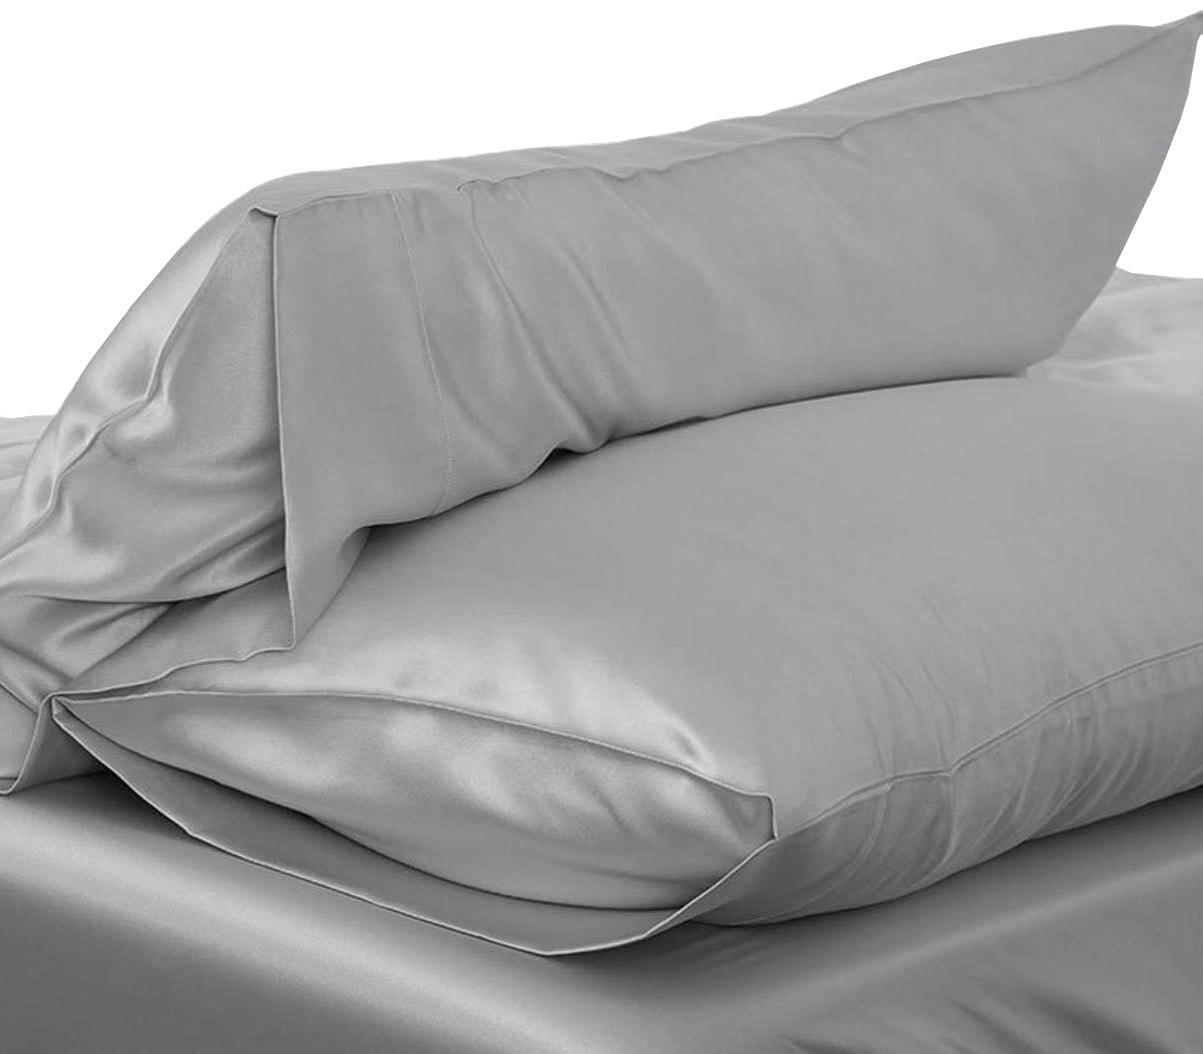 1pc 51*76cm baby sengetøj luksus silkeagtigt satin pudebetræk pudebetræk ensfarvet standard pudebetræk pudebetræk: Sølv